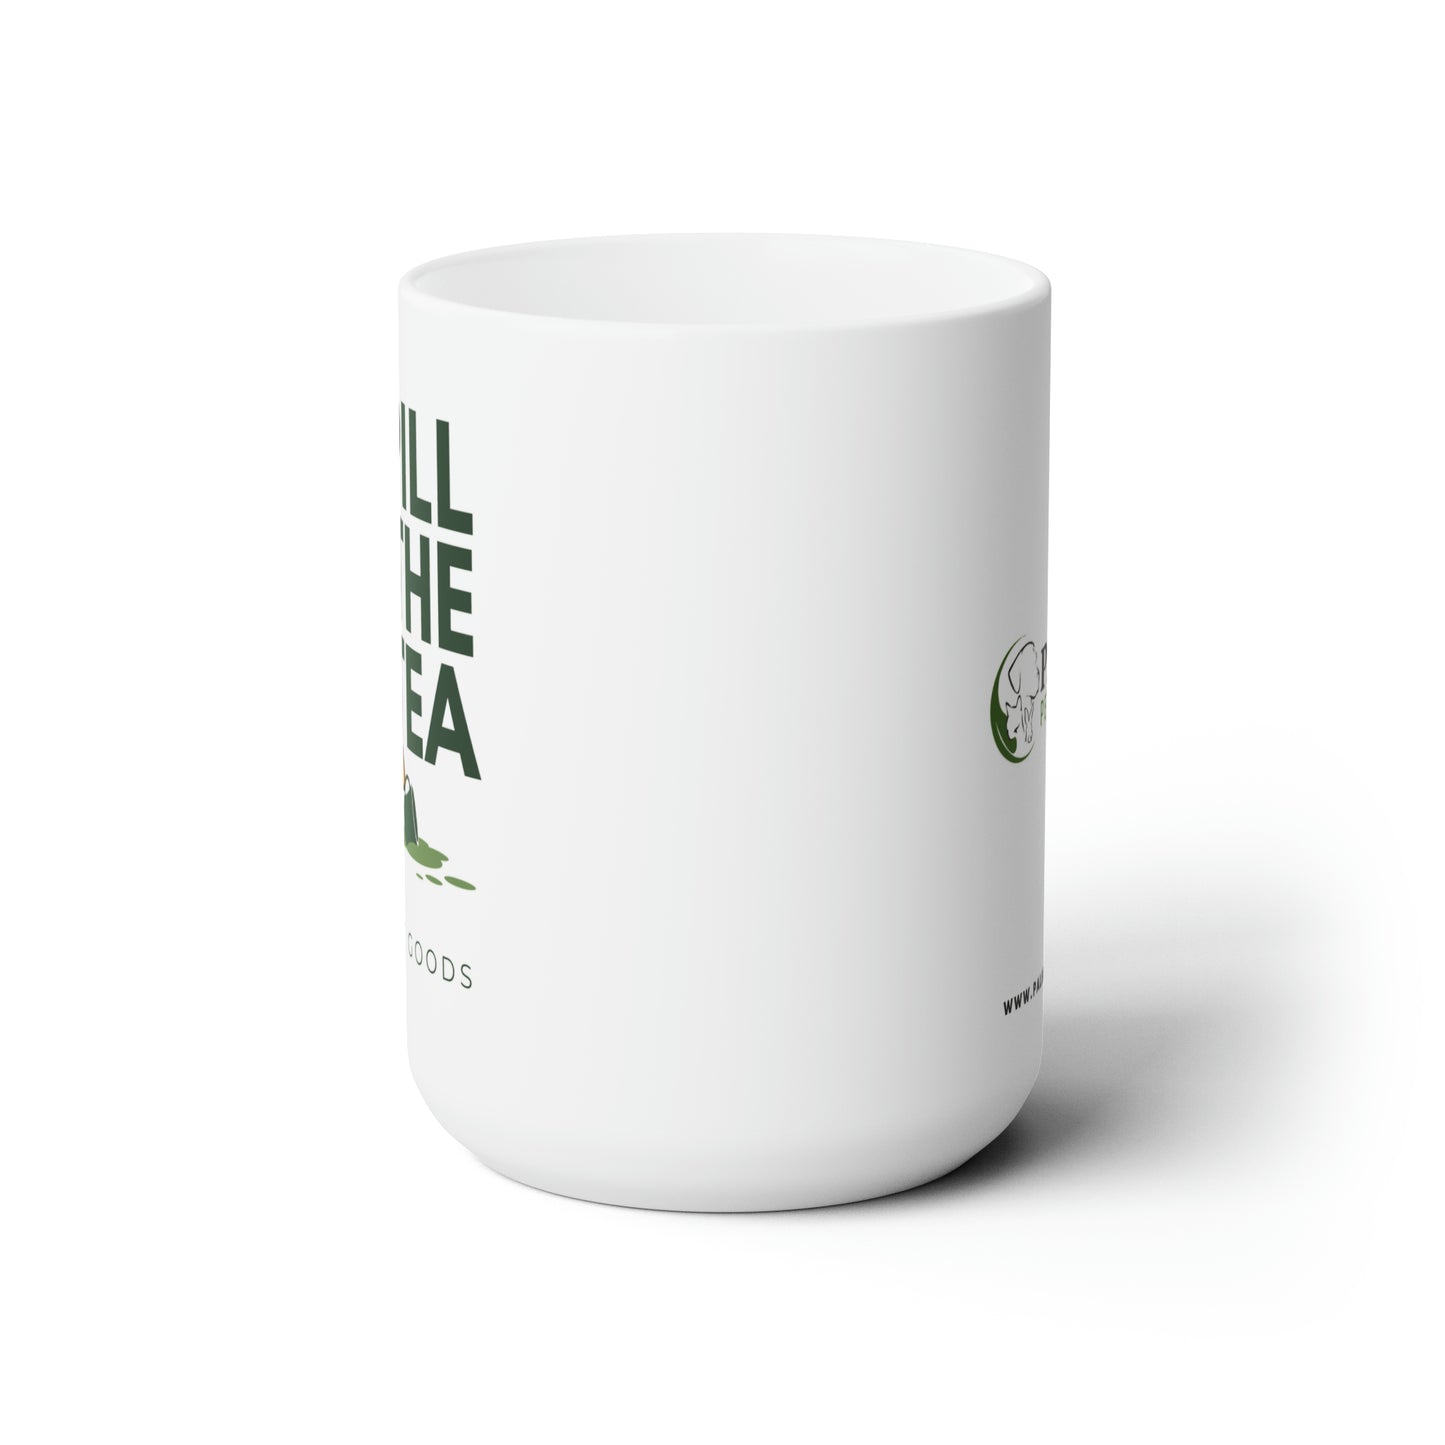 Ceramic Mug- Spill the Tea